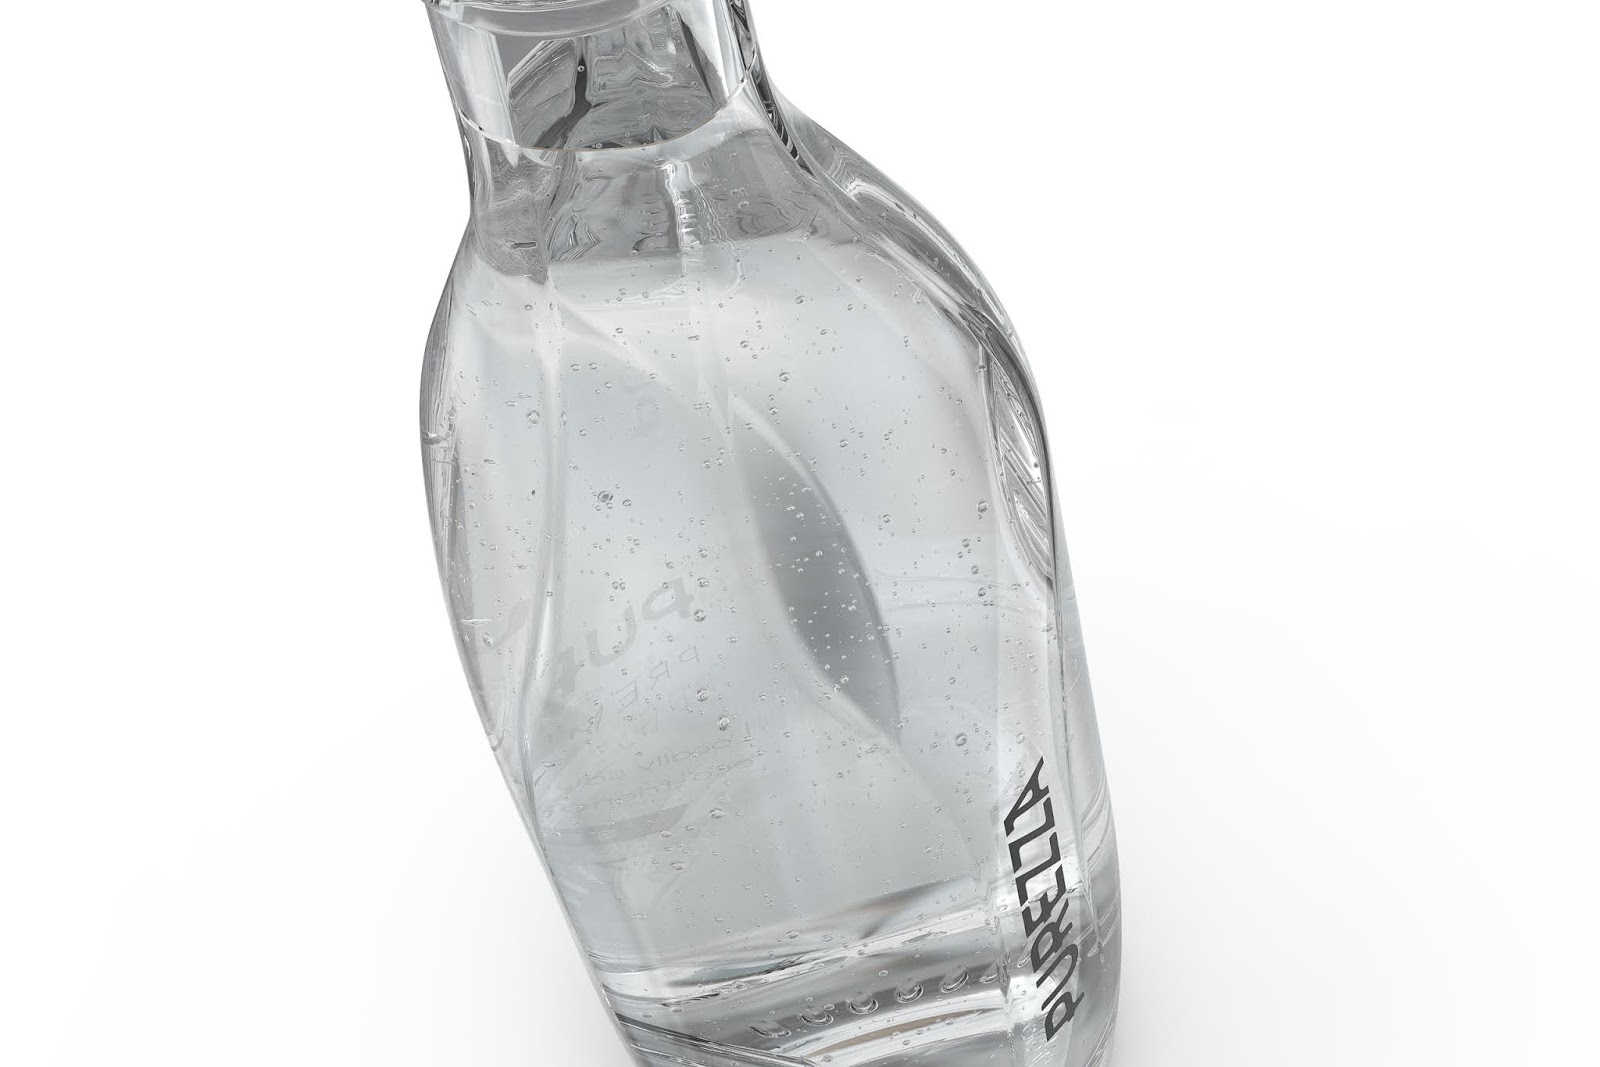 美丽的瓶子！Purezza瓶装水包装设计